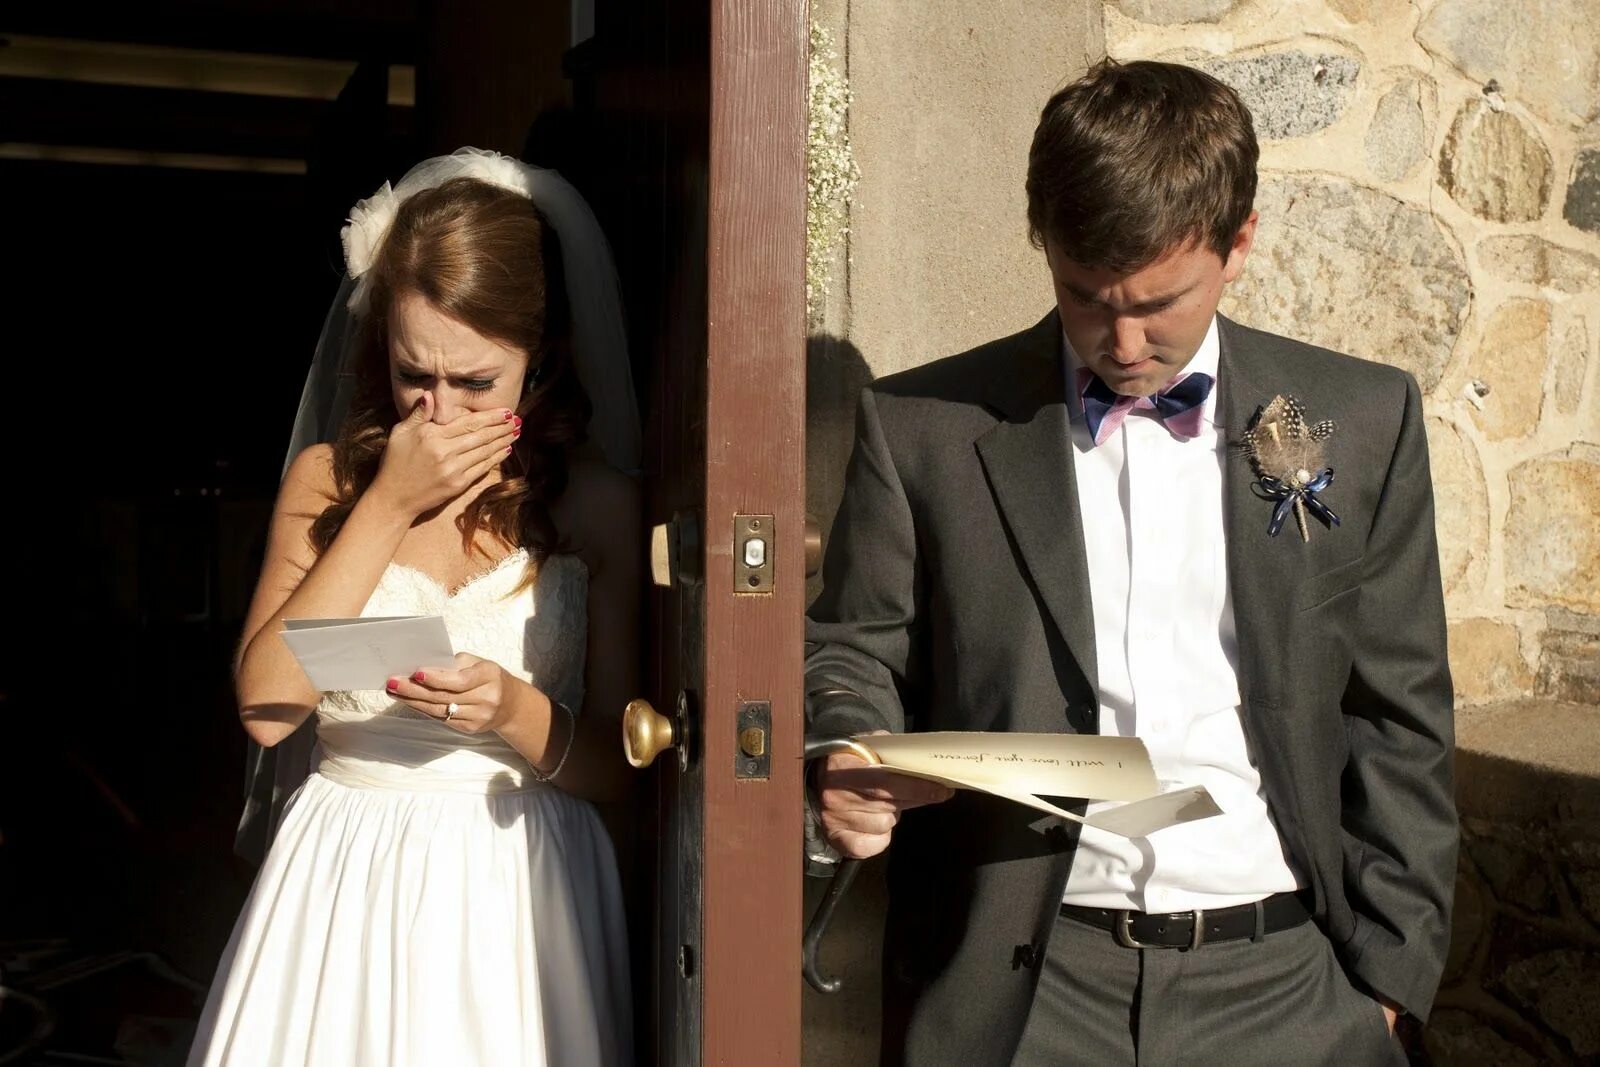 Мужчина и женщина свадьба. Невеста изменяет жениху на свадьбе. Парень перед свадьбой. Фотосессия перед свадьбой жених и невеста.